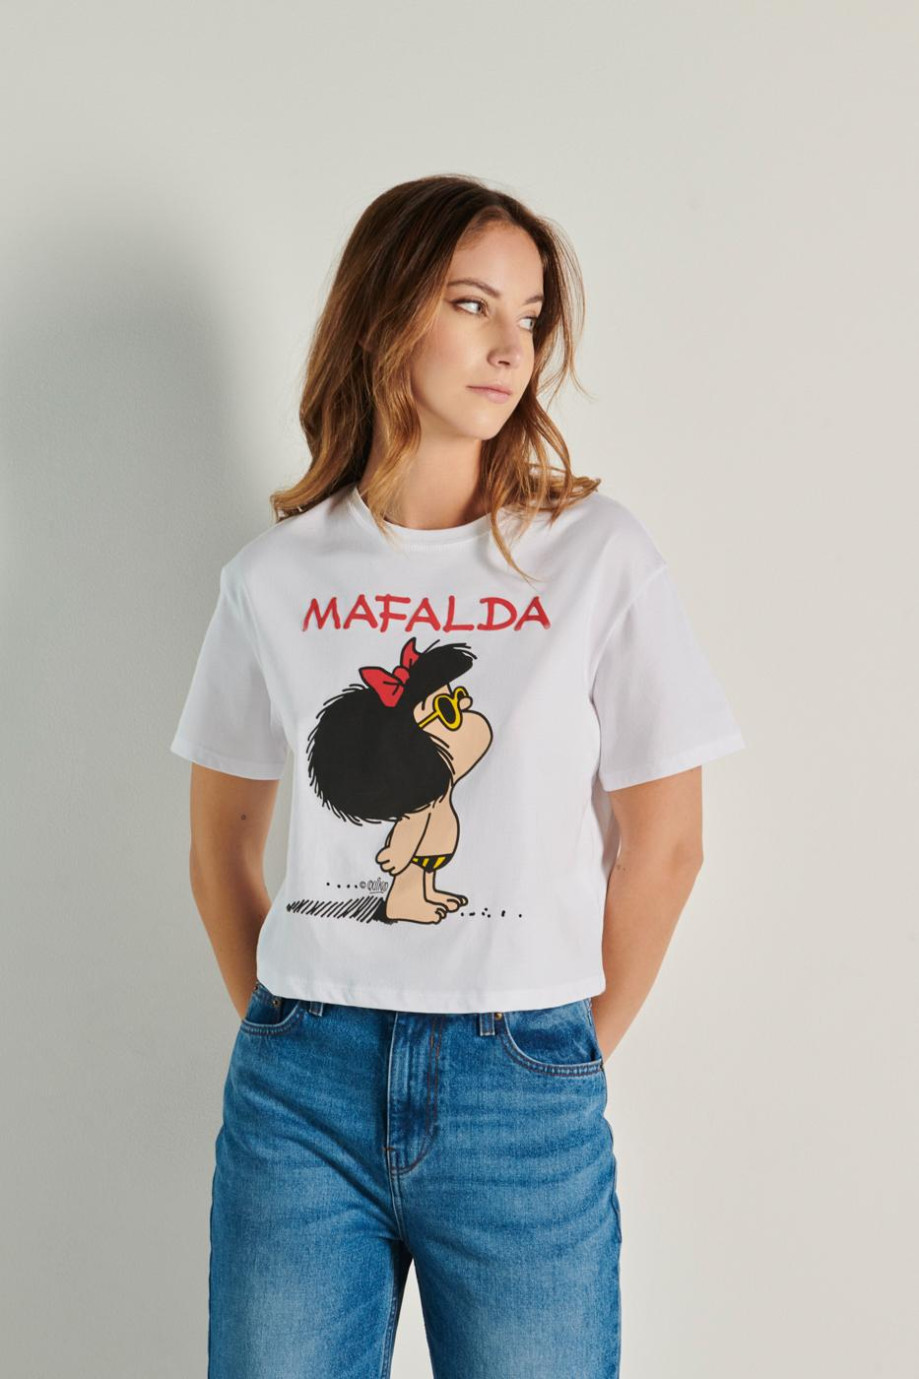 Camiseta crop top crema clara con diseño de Mafalda y manga corta